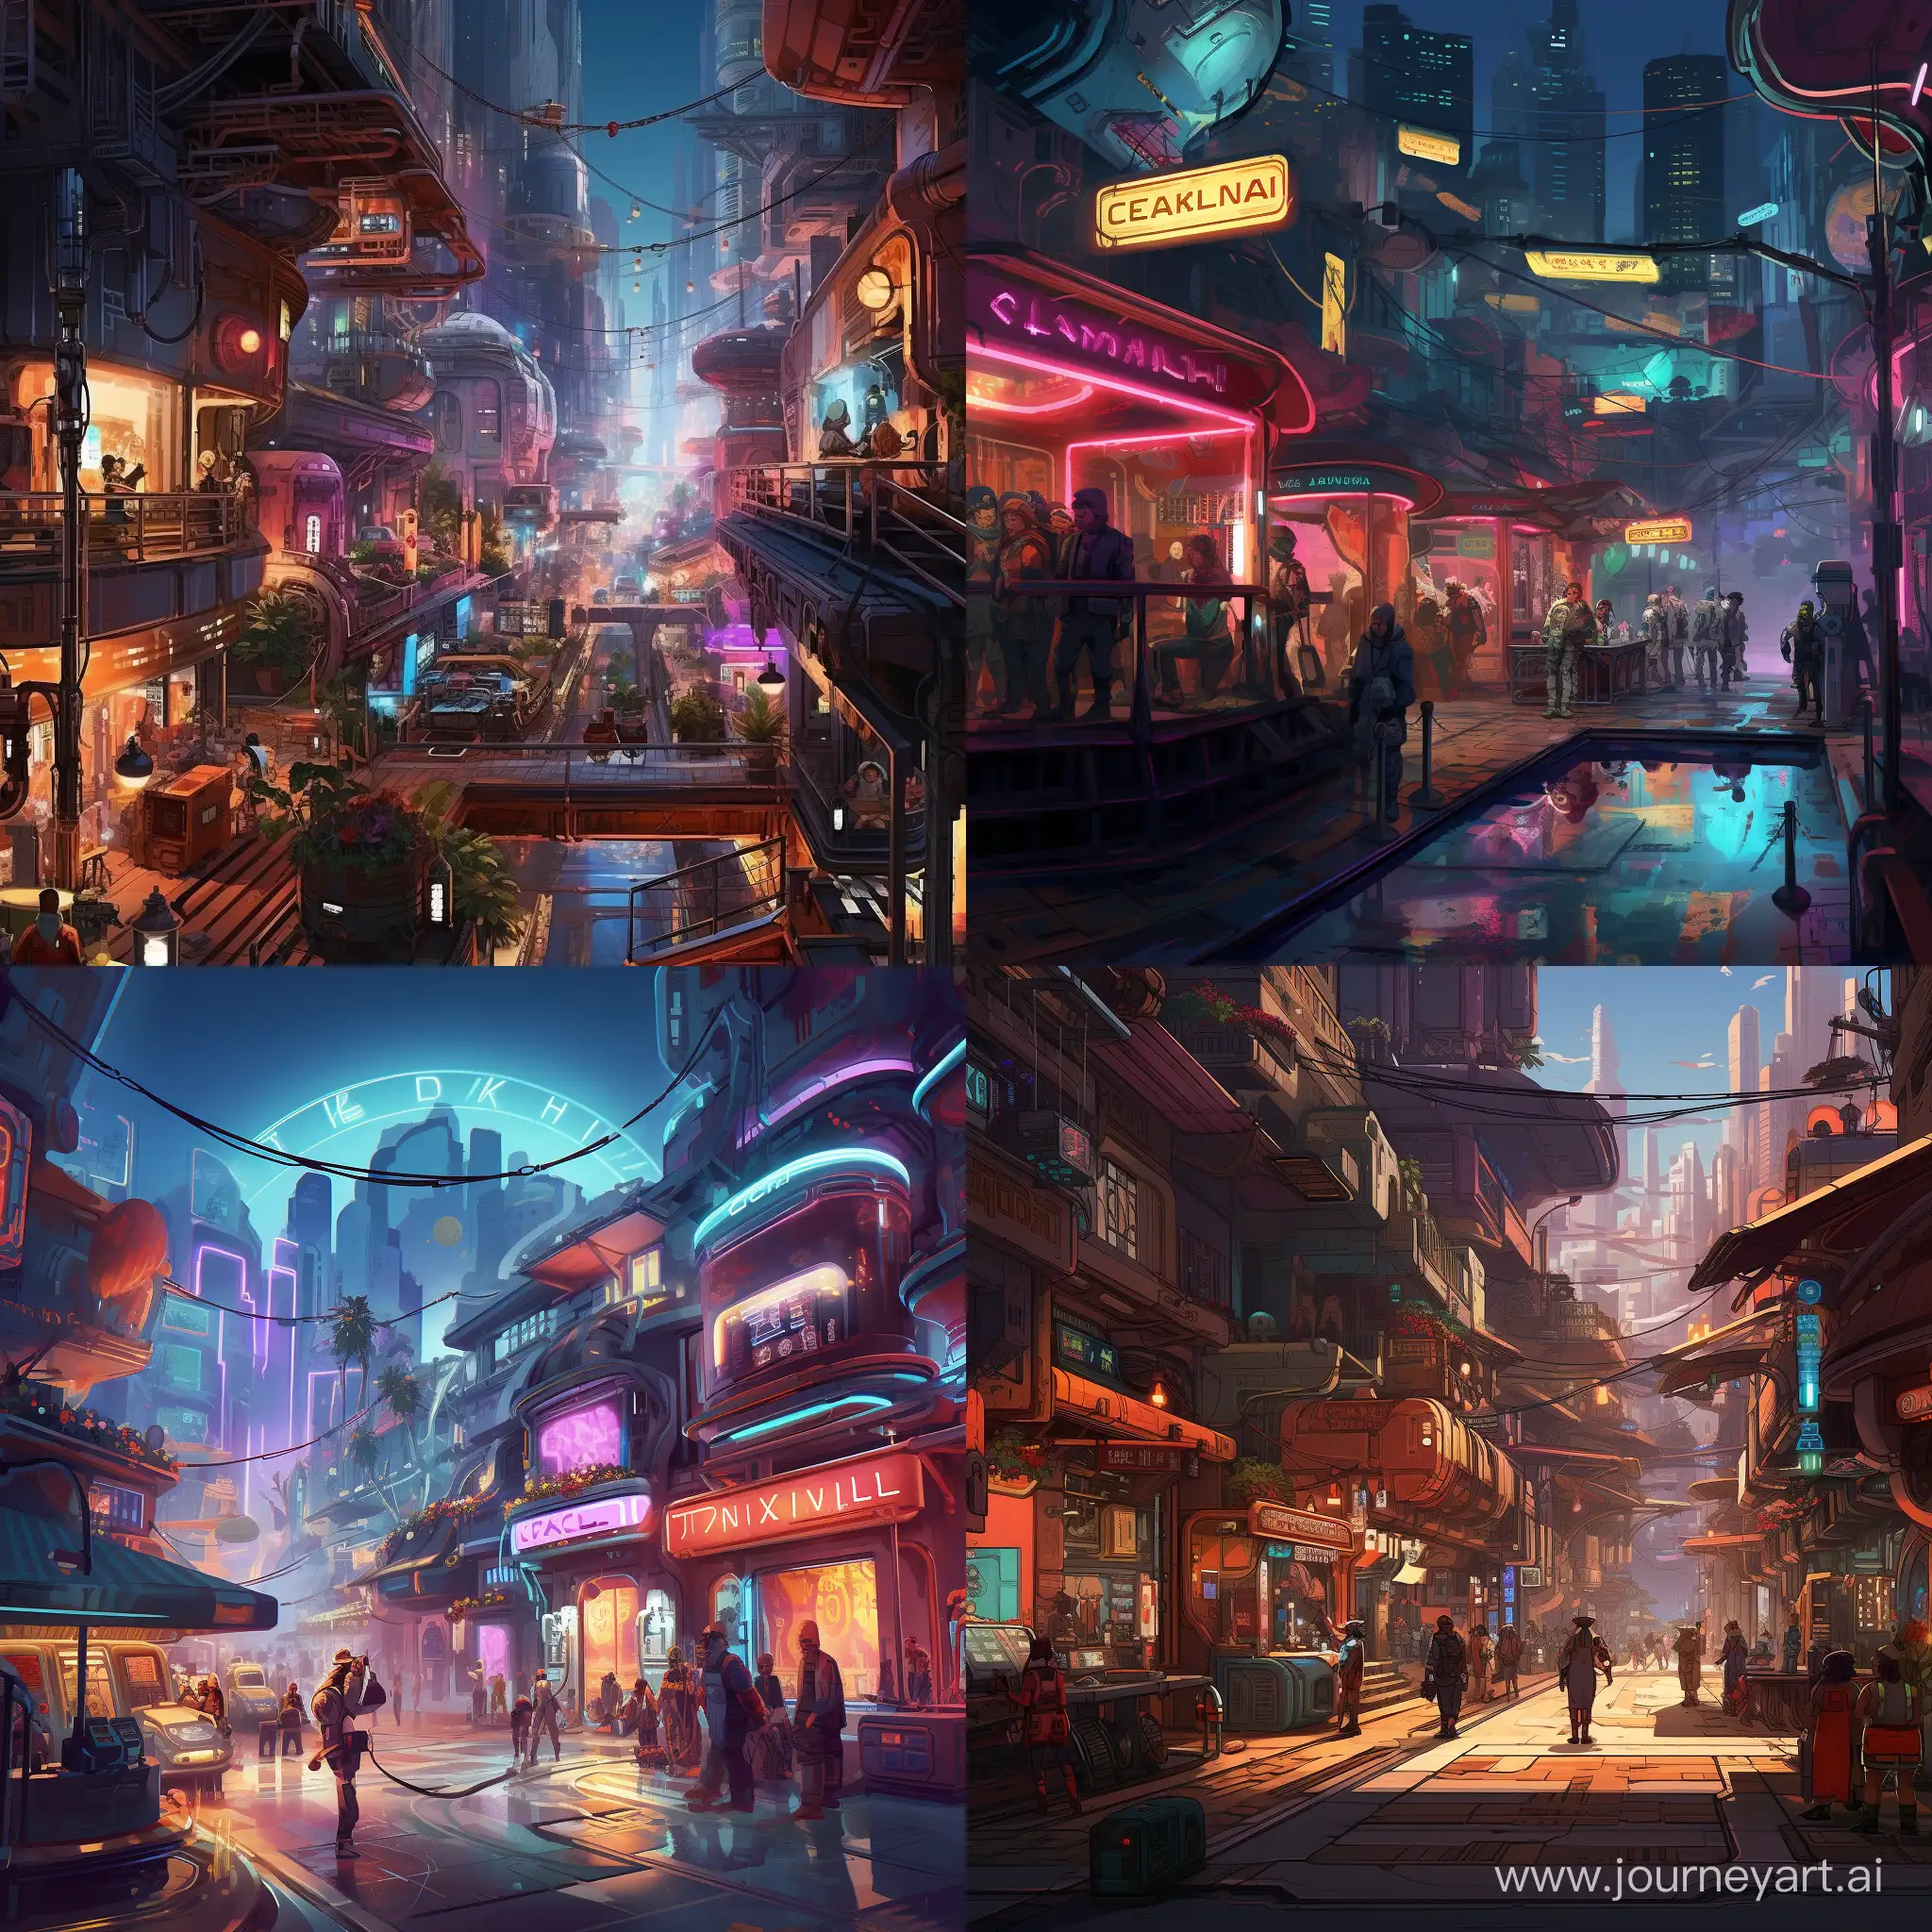 Futuristic-Cyberpunk-Colony-SciFi-World-Illustration